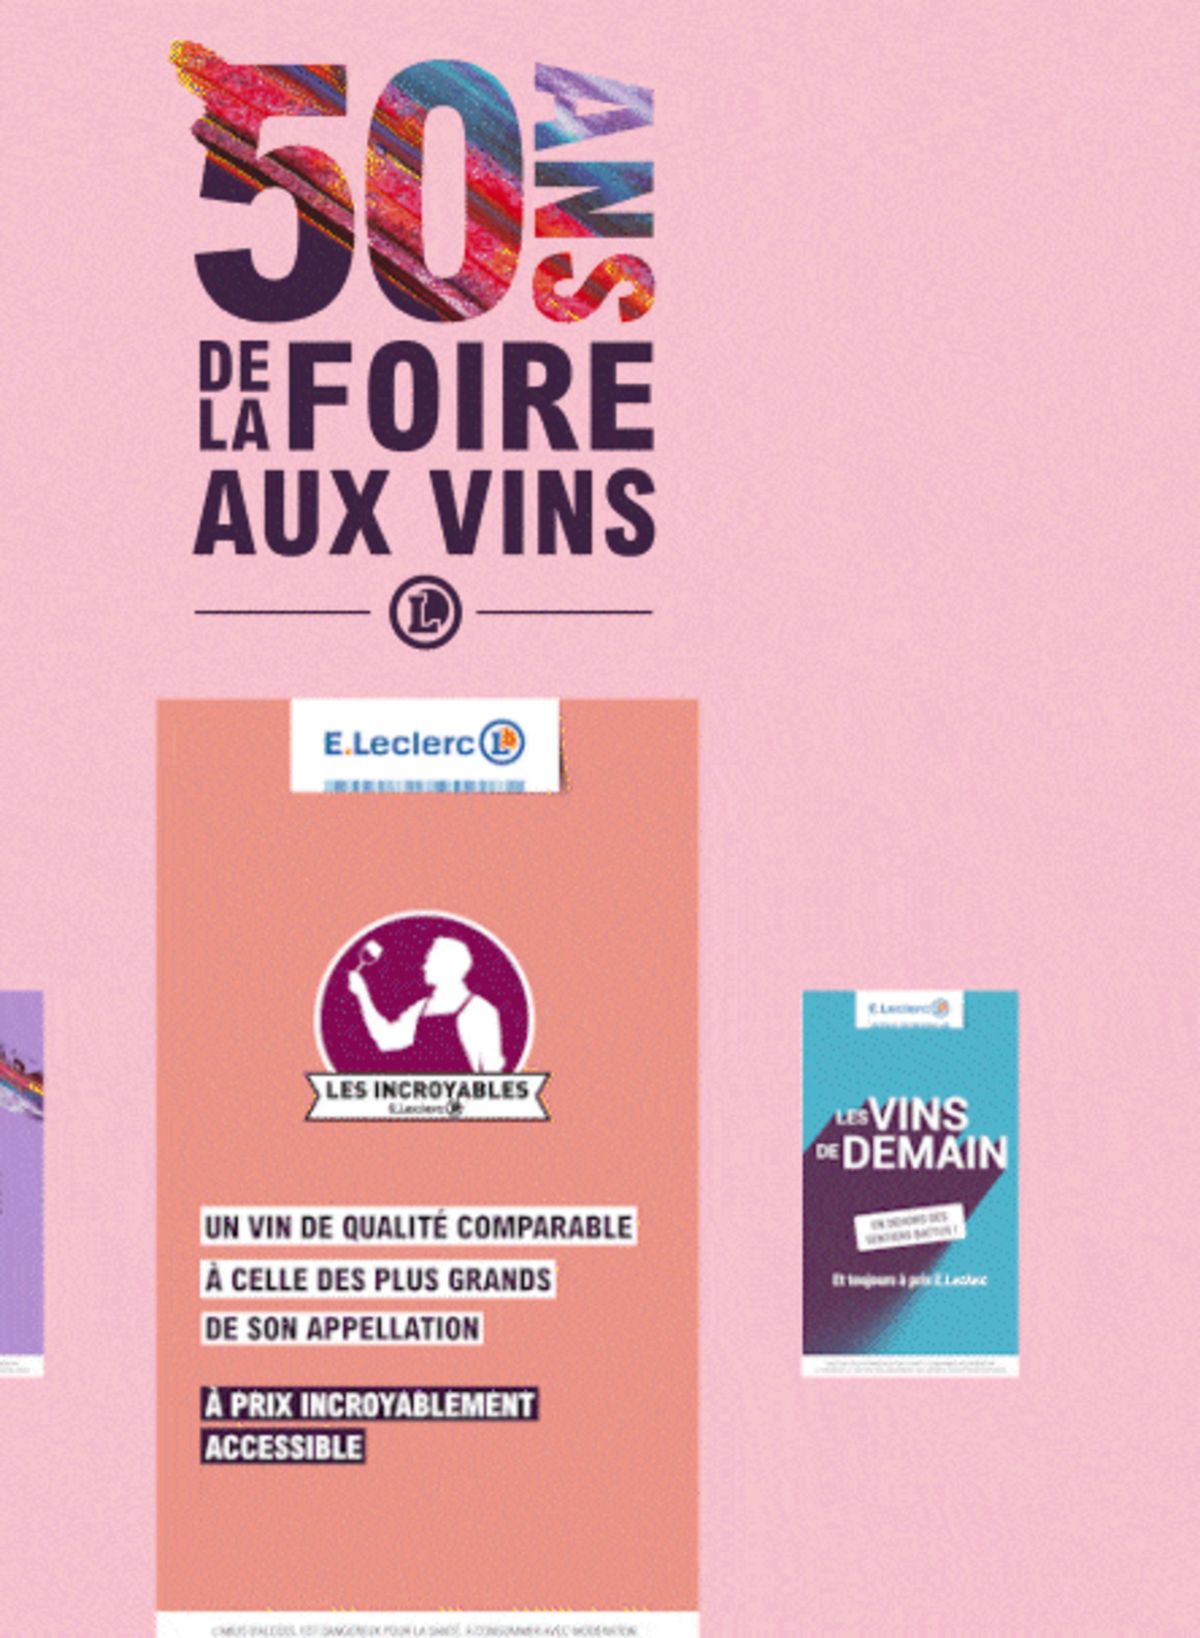 Catalogue Foire Aux Vins - Mixte, page 00678